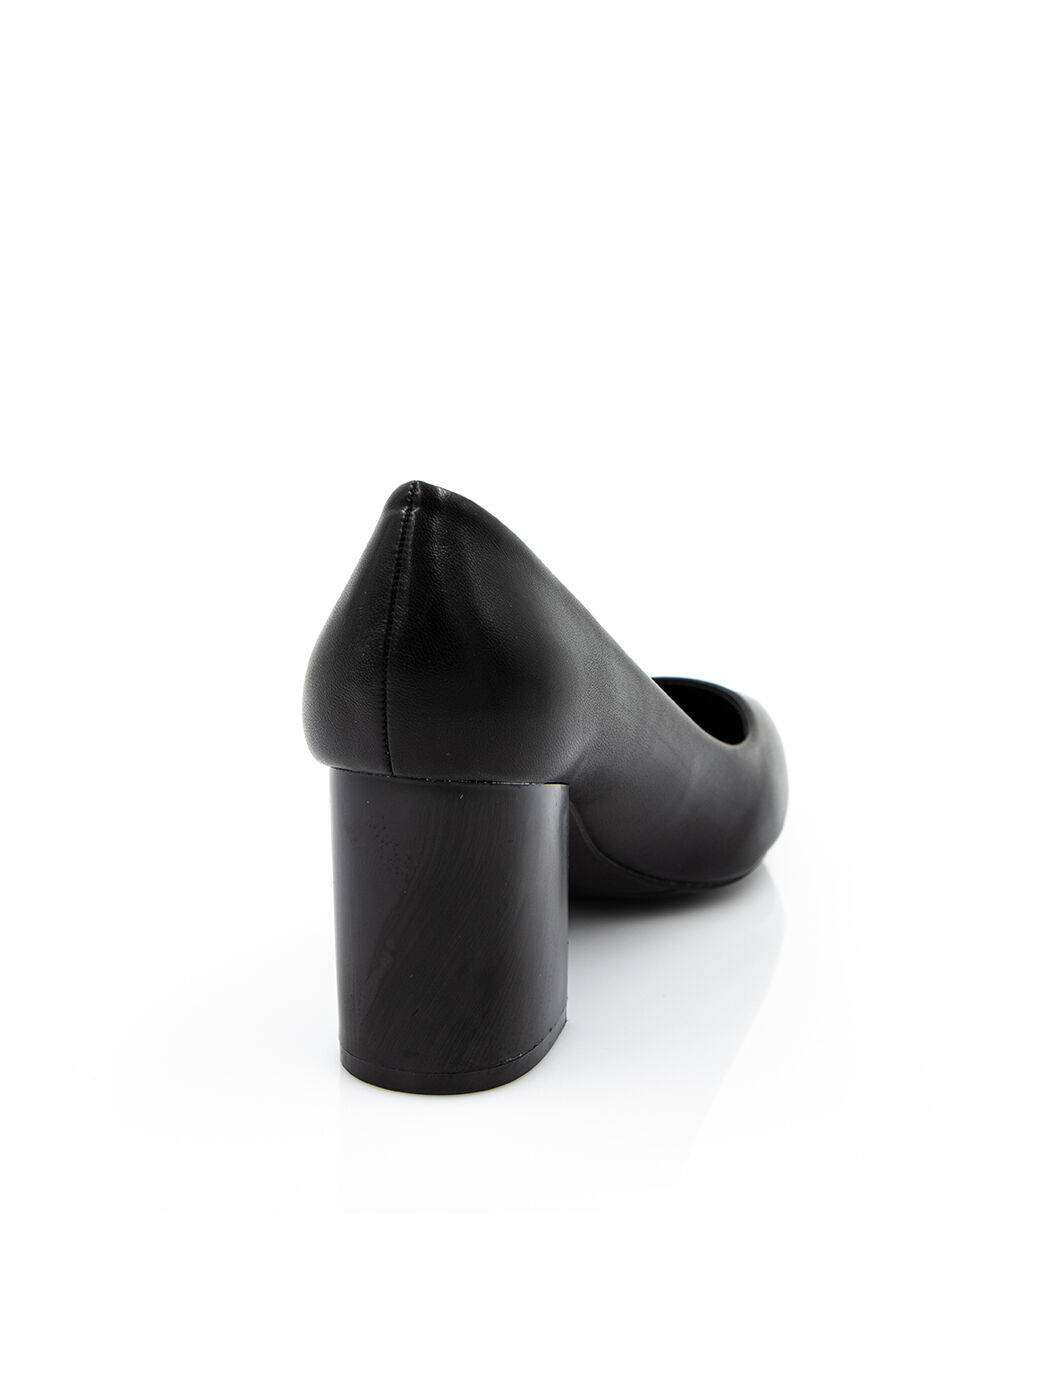 Туфли женские черные экокожа каблук устойчивый демисезон от производителя FM вид 1